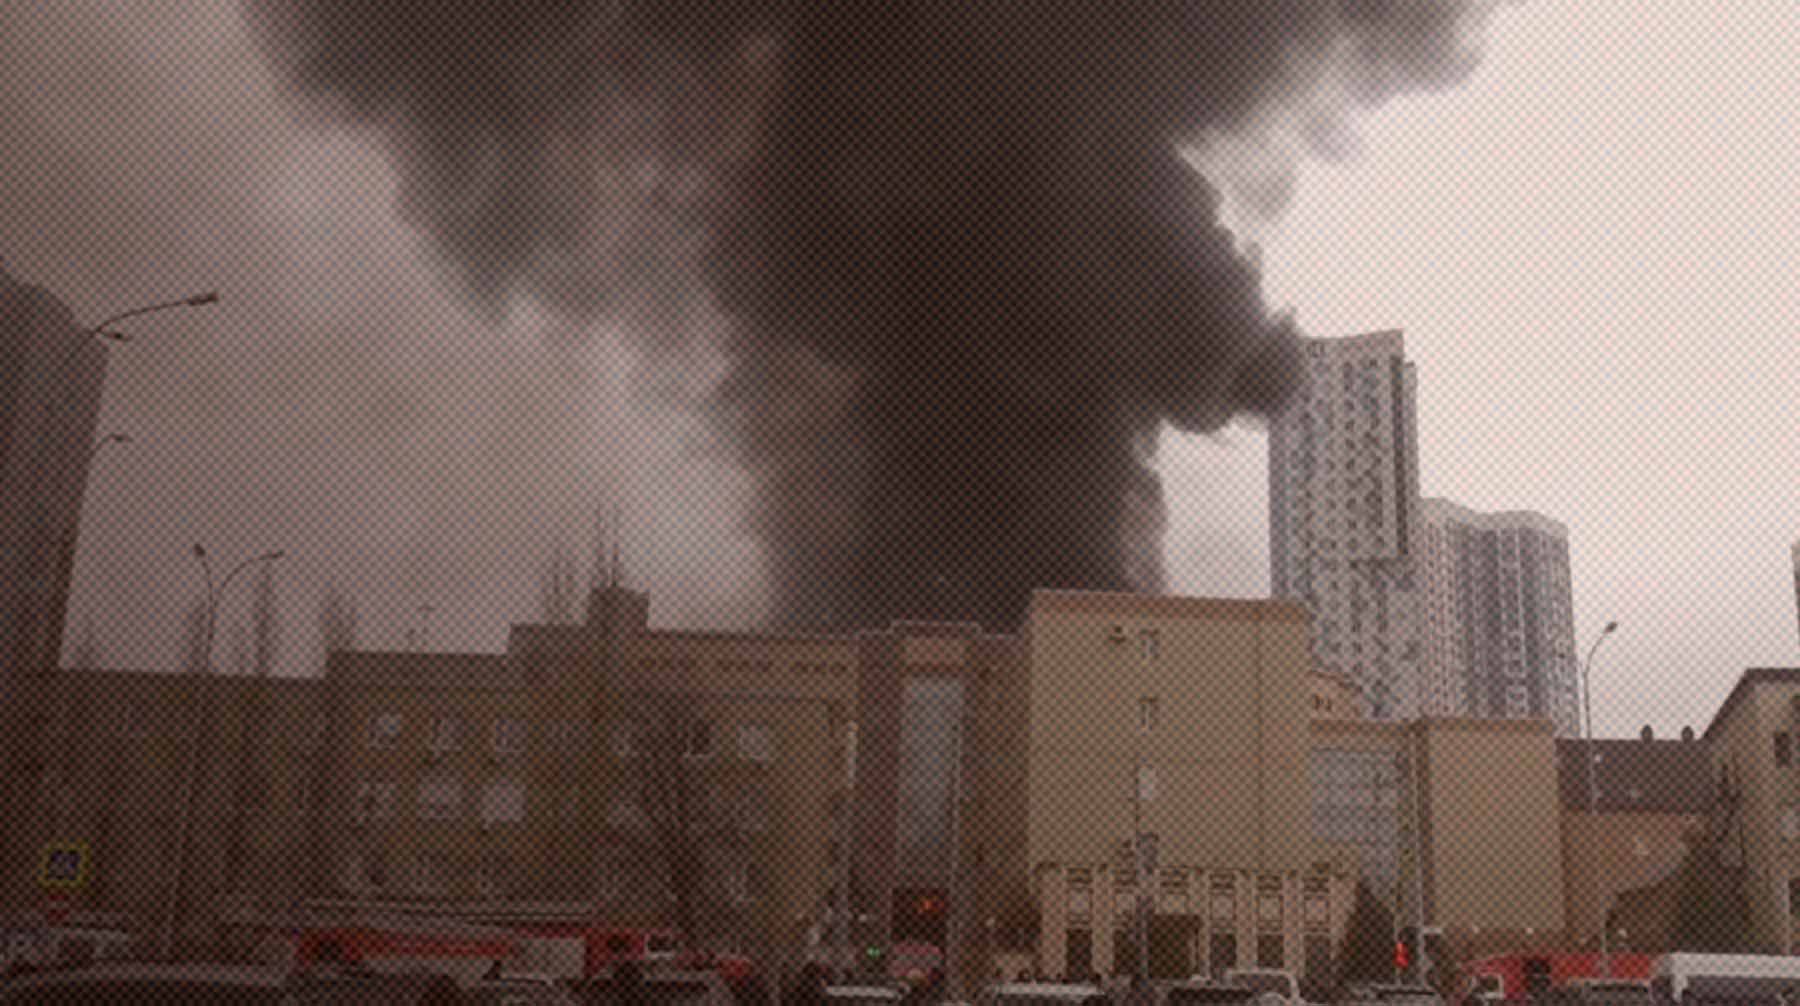 Dailystorm - «Сильный хлопок и много дыма»: очевидцы рассказали о пожаре в здании ФСБ в Ростове-на-Дону